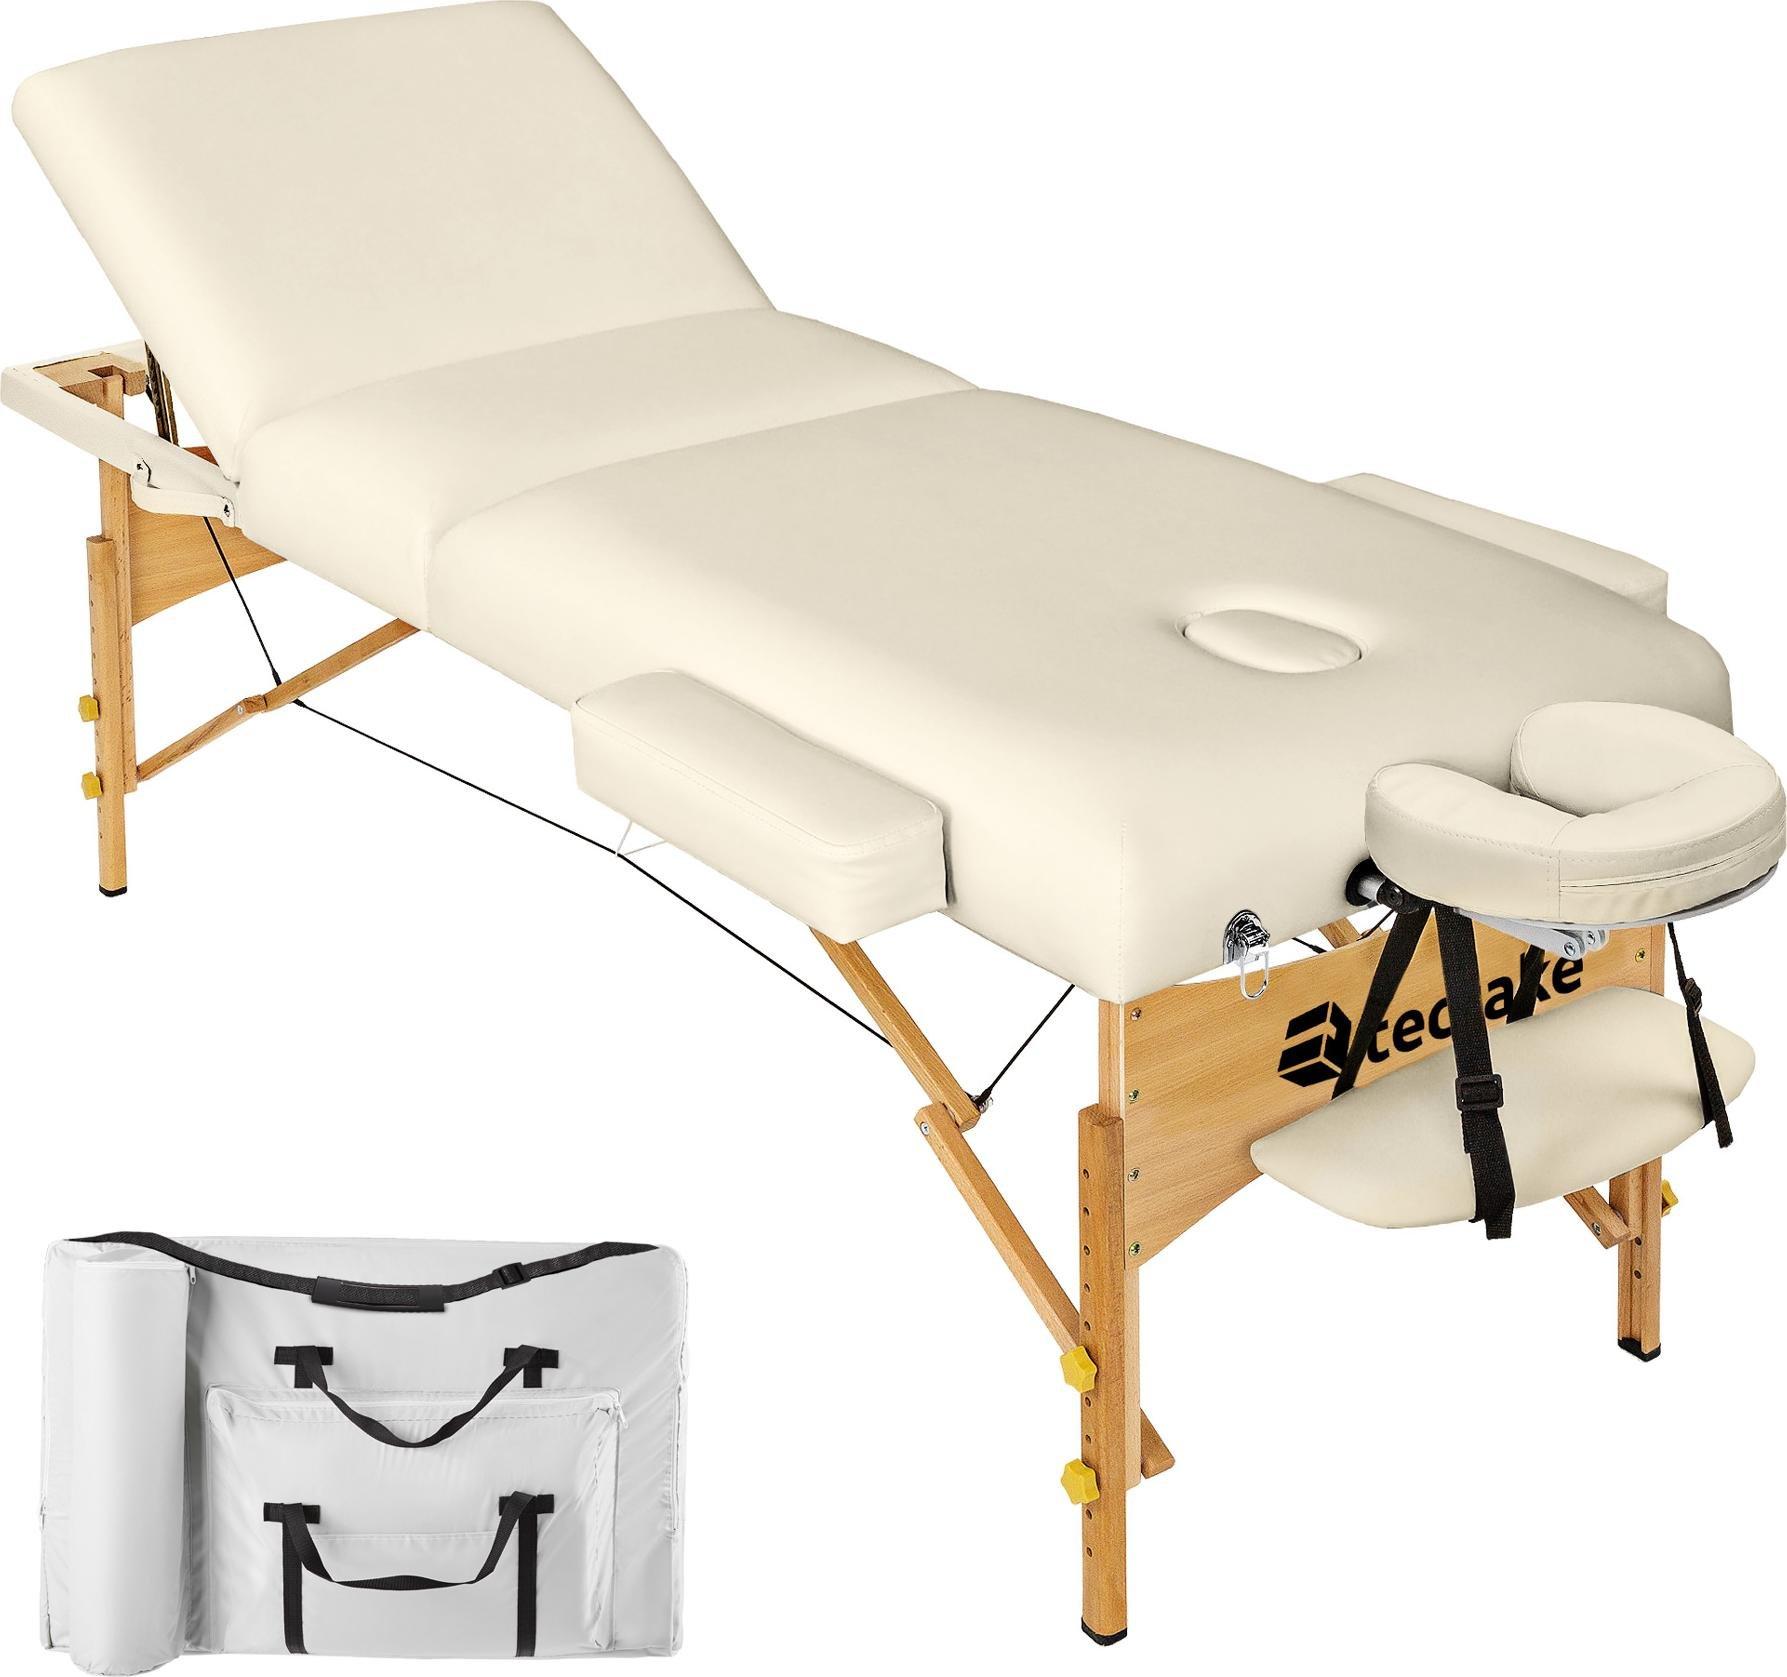 Фото - Масажний стіл Tectake 3-strefowy stół do masażu z 10 cm wyściółką i drewnianą ramą - beż 